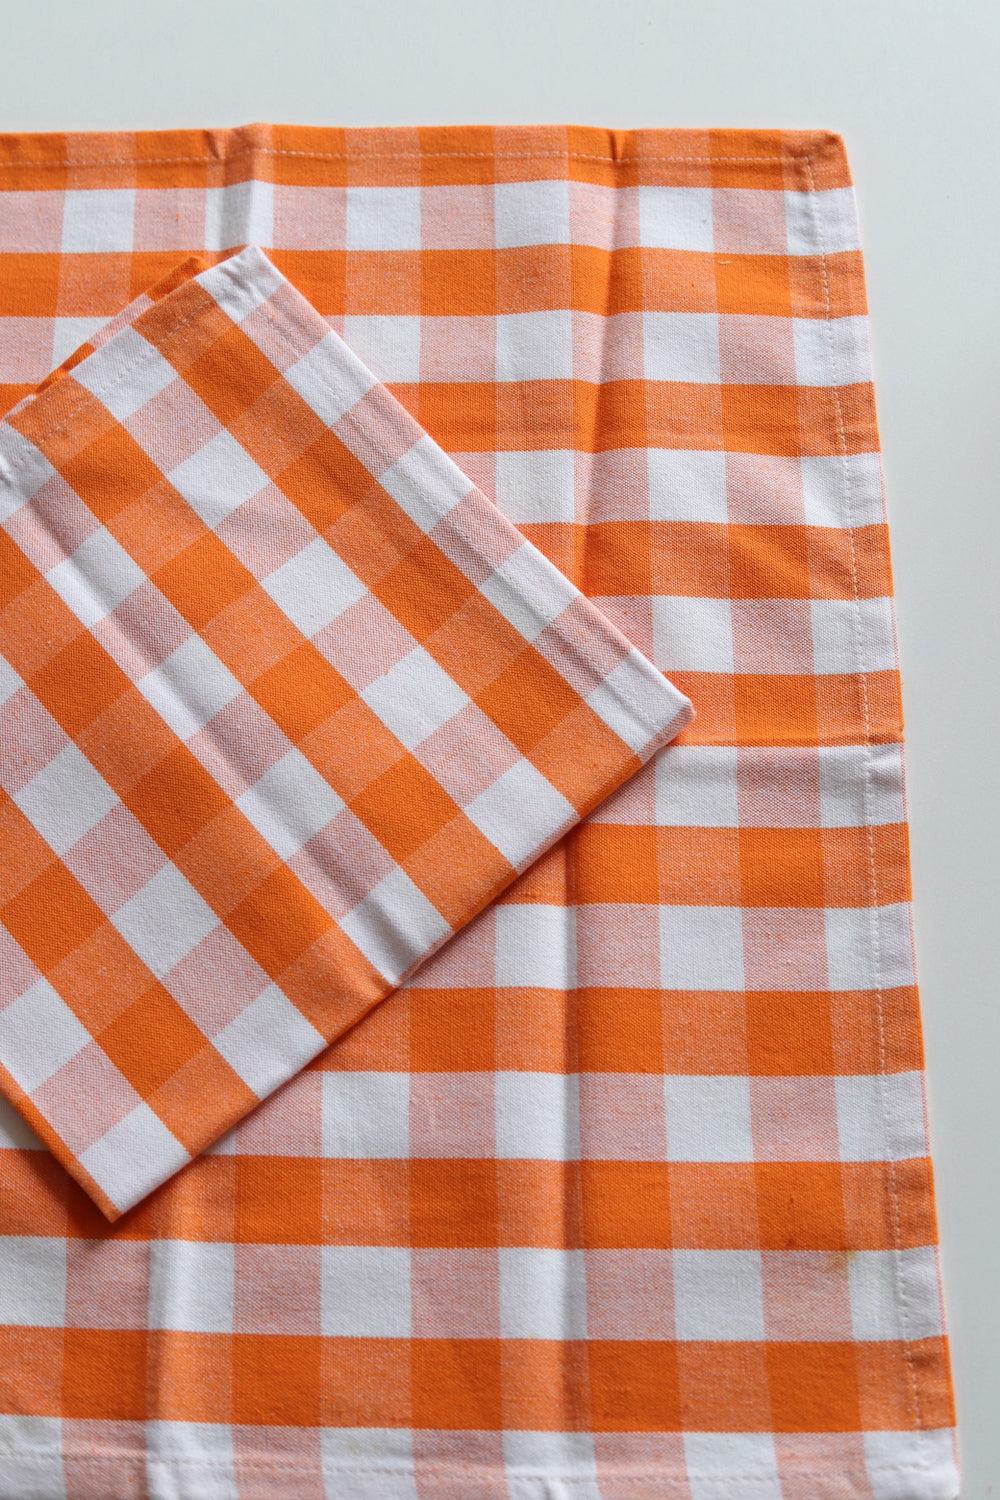 Two orange and white checked napkins